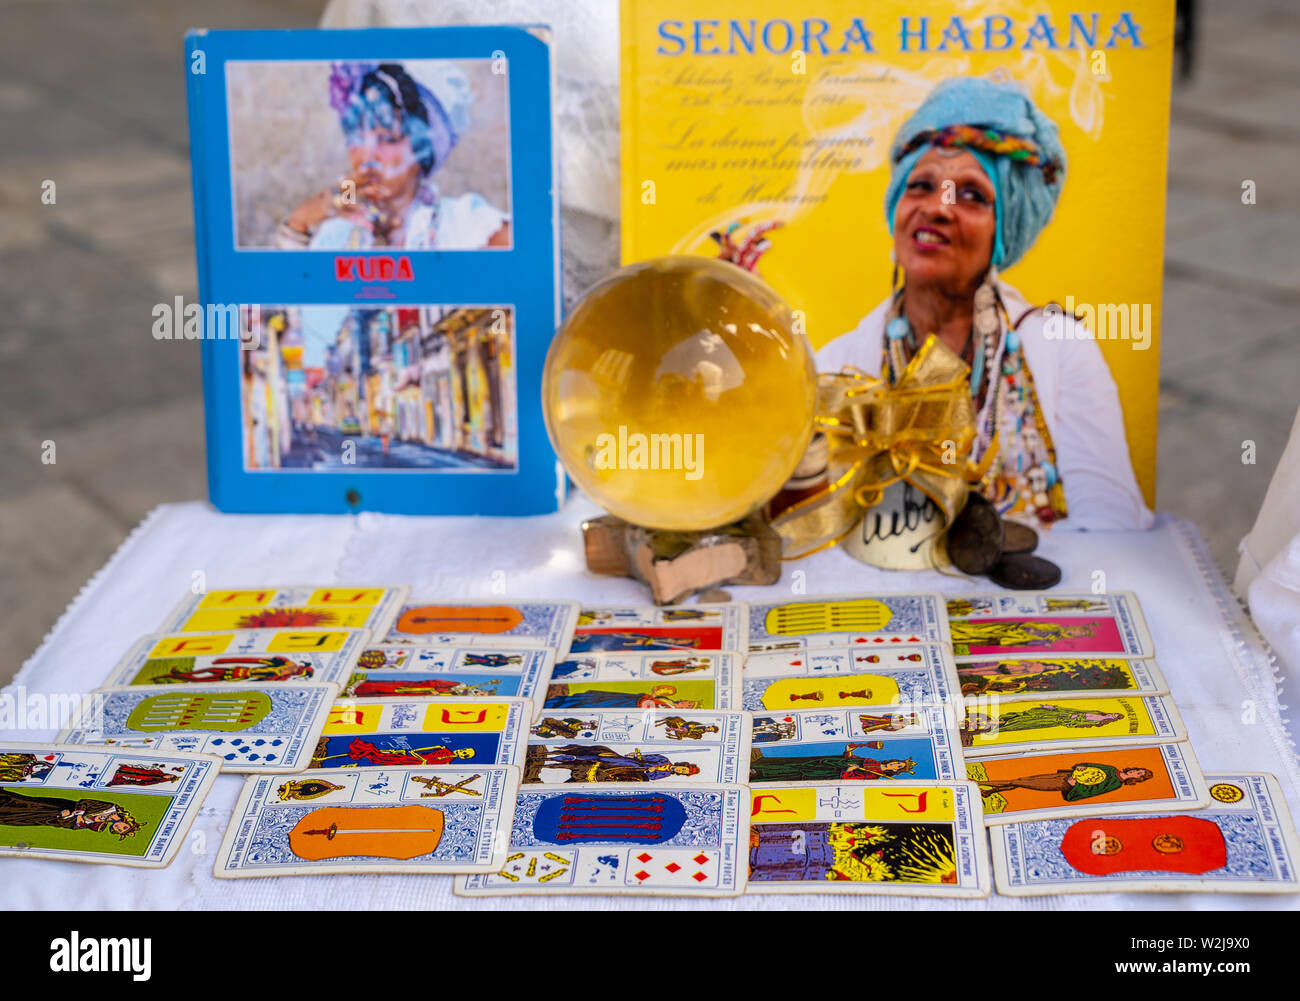 Plaza de la Catedral, Havanna, Kuba - Januar 2, 2019: Die afro-kubanische Priesterin oder Santera La Señora Habana's zeigt Ihr tarot Karten. Stockfoto